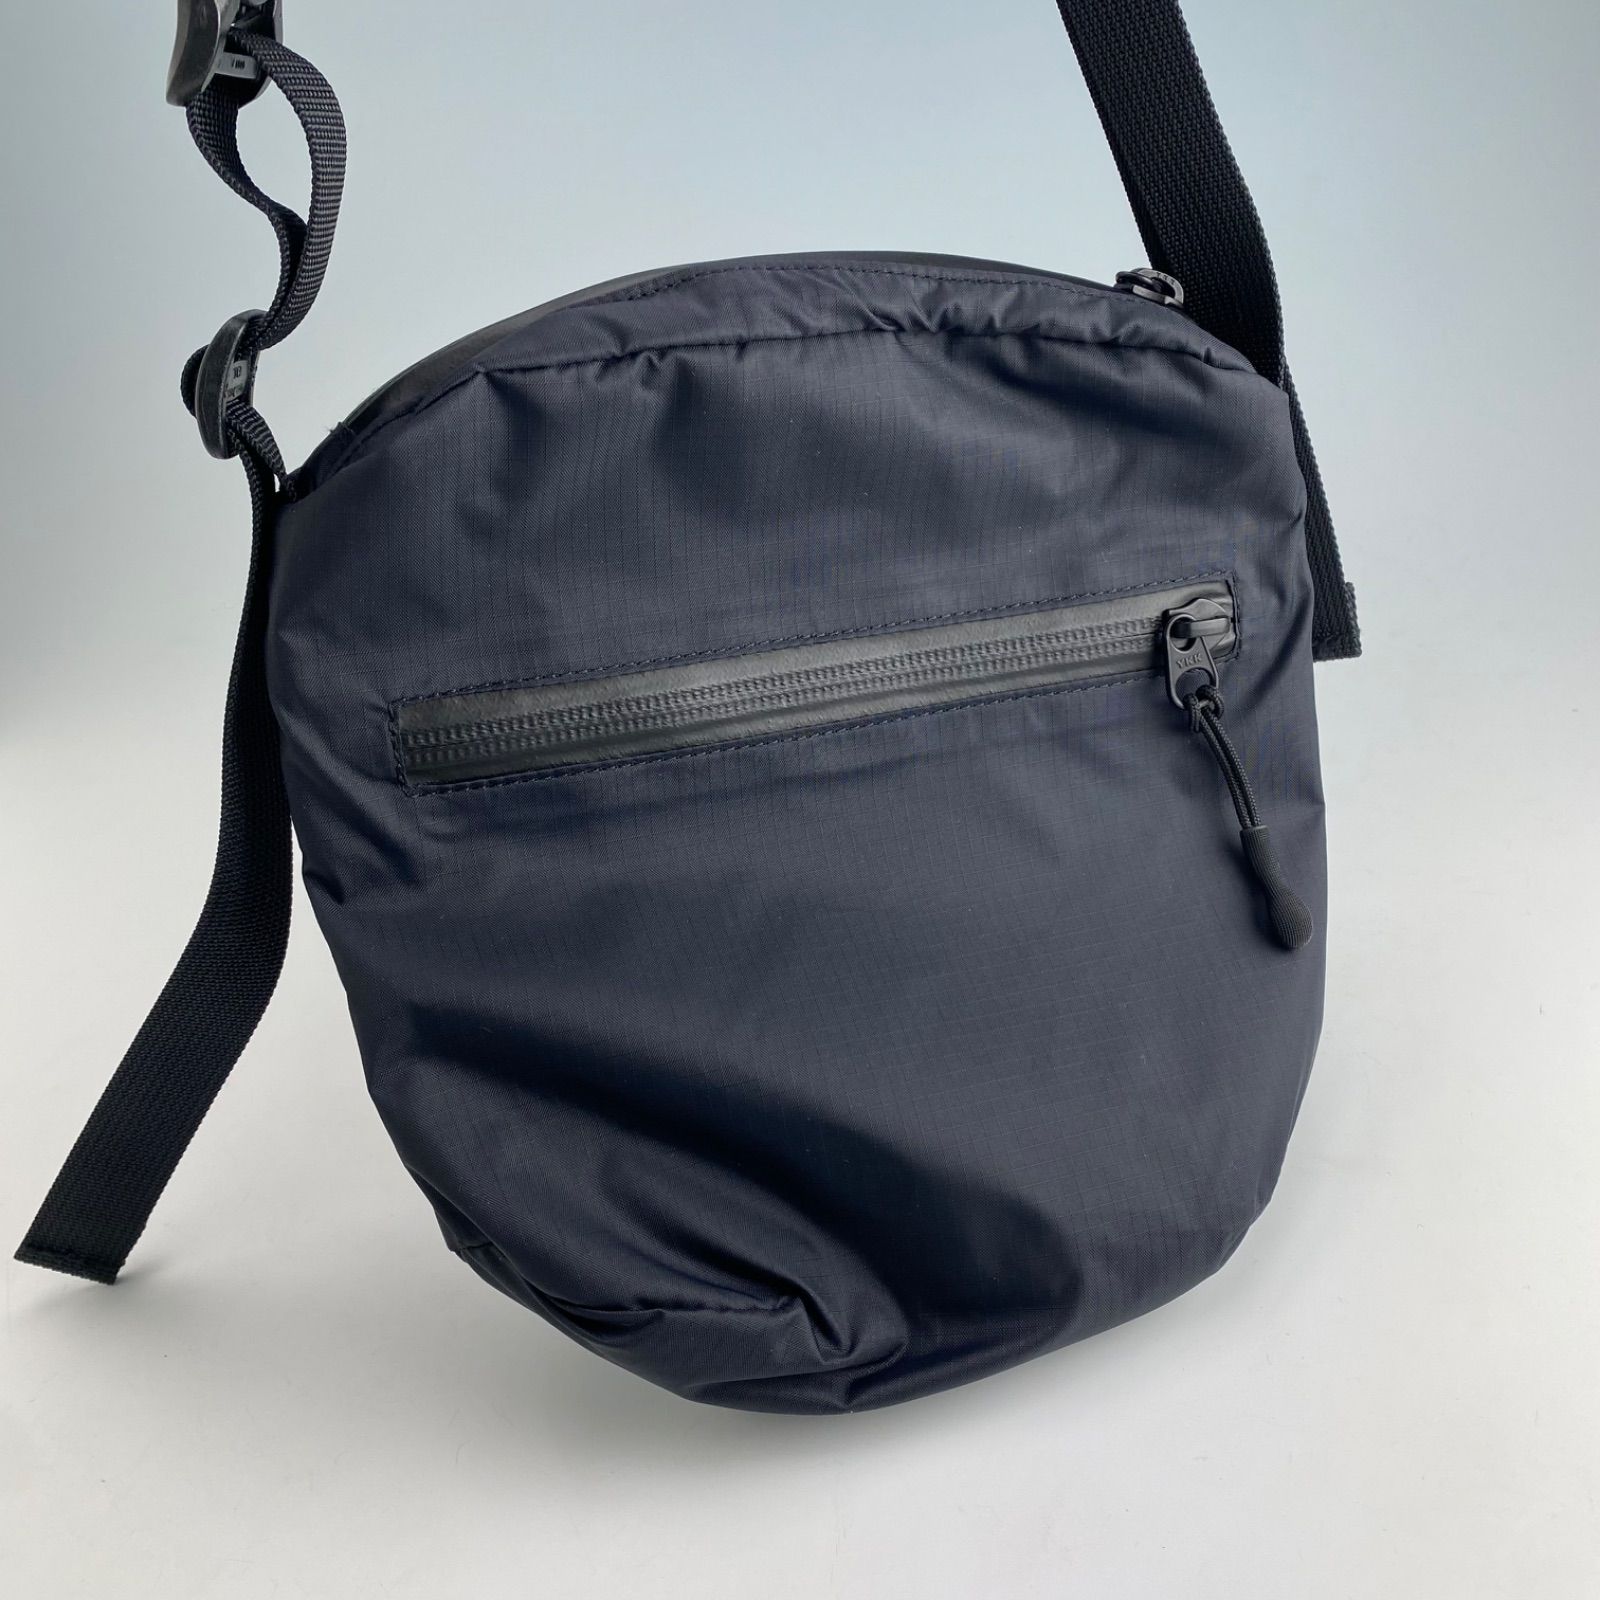 Ovy Nylon Lightweight Shoulder Bag large - バッグ